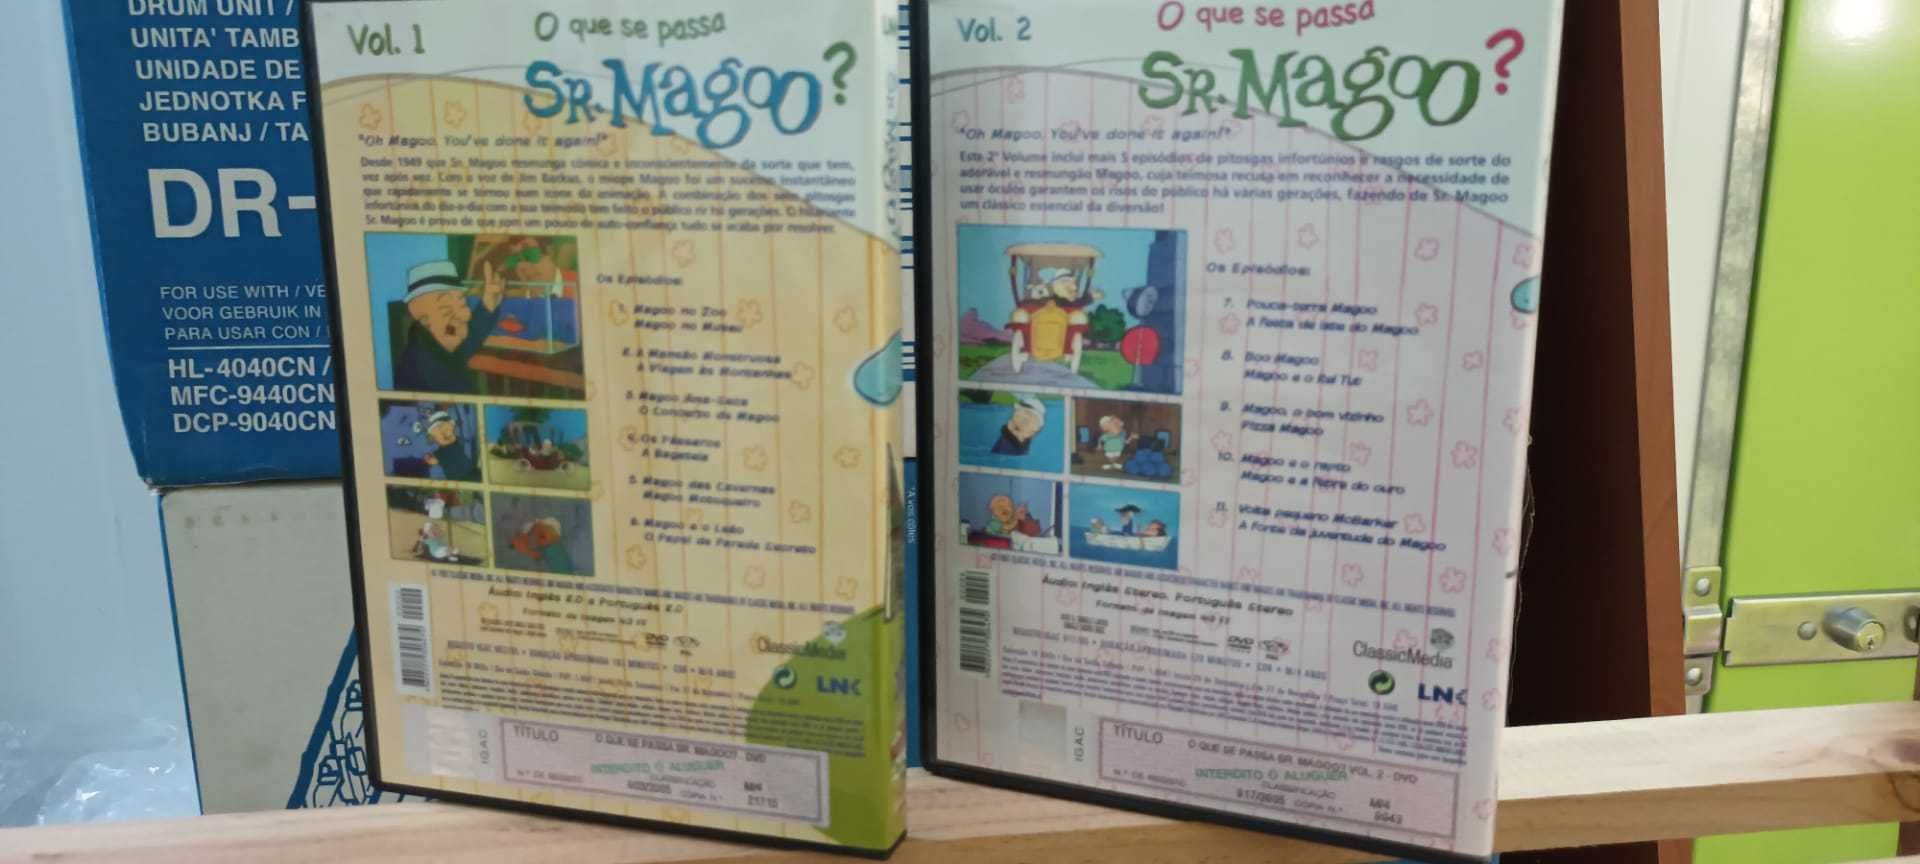 2 DVD " Sr. Magoo ? " 11 Episódios